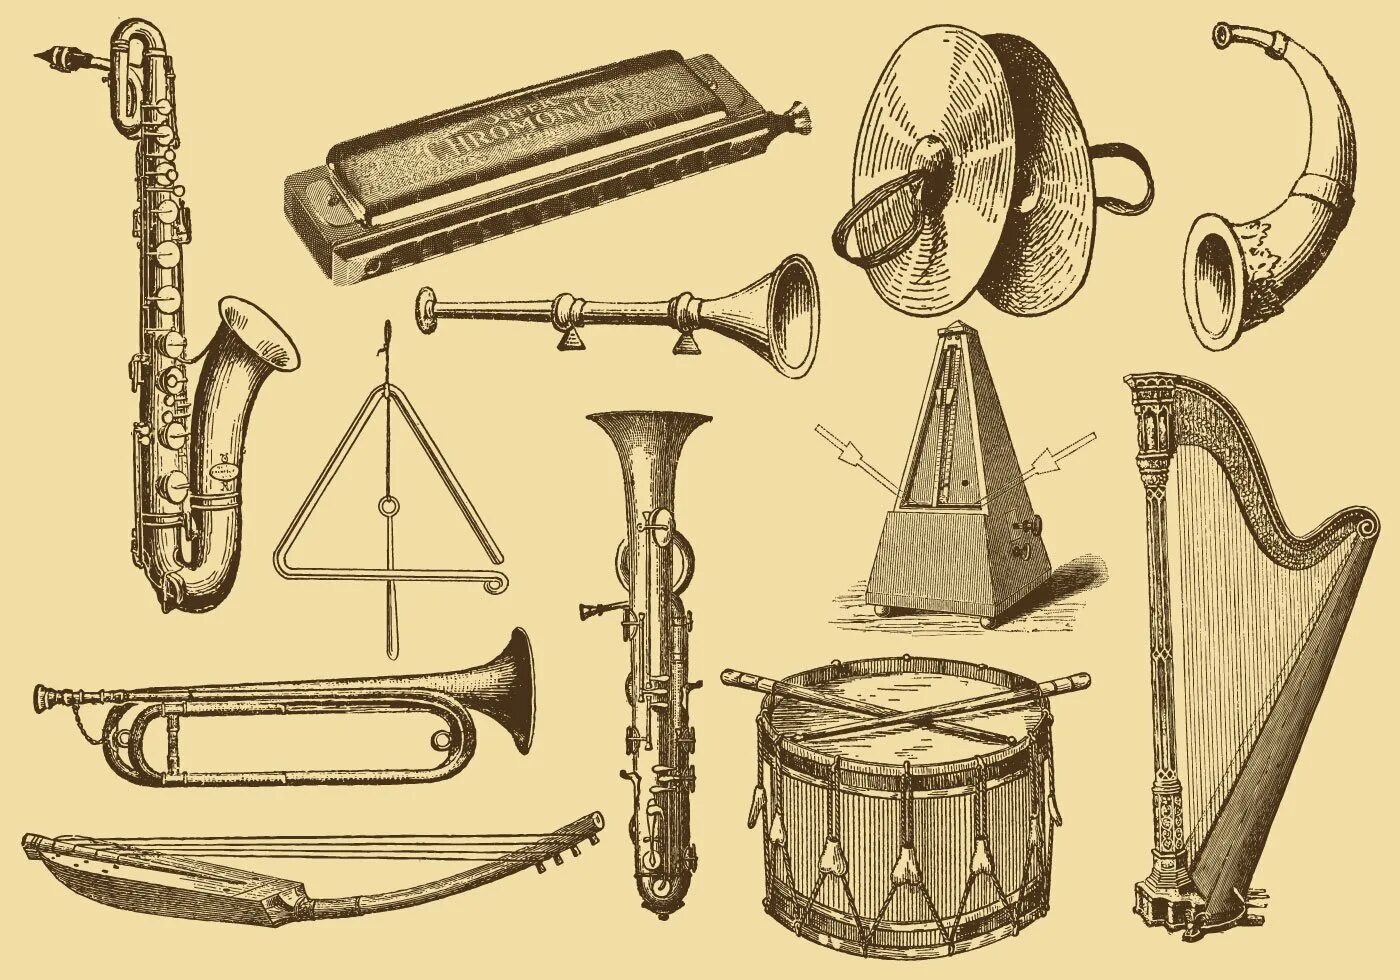 Музыкальные инструменты в древности. Старинные инструменты. Музыкальные инструменты древности. Старинные муз инструменты. Музыкальные инструменты в старину.